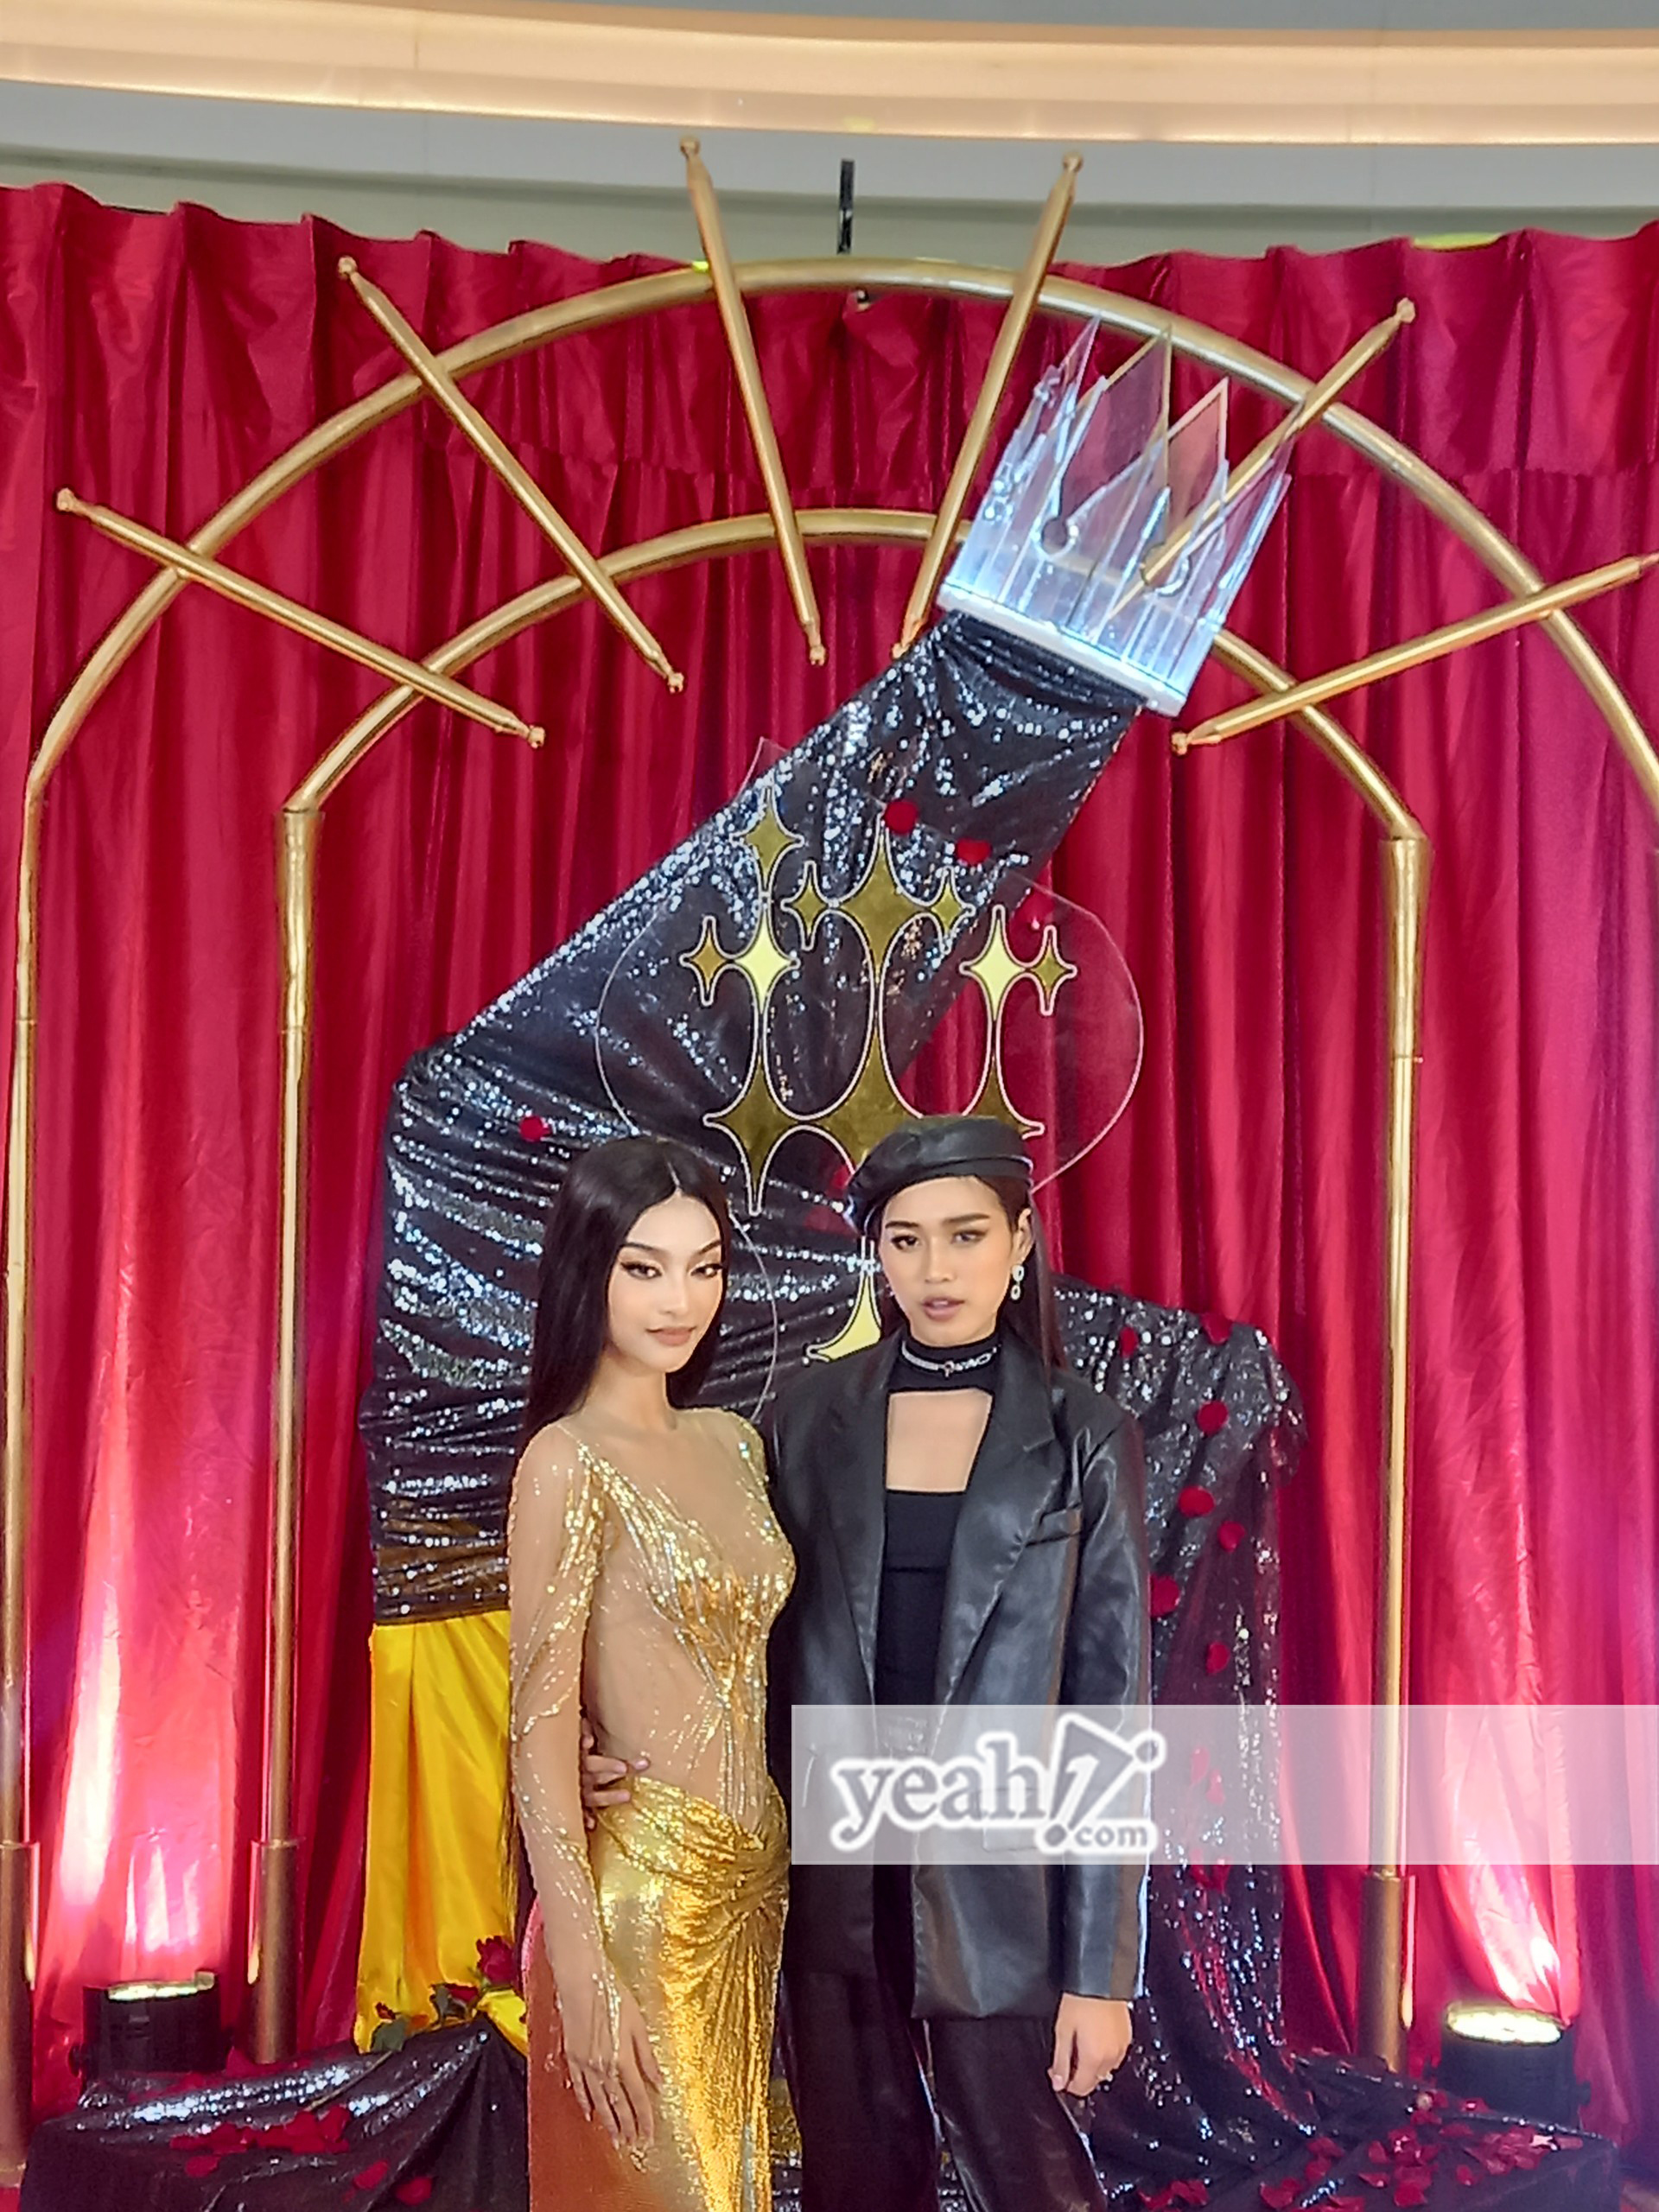 Hương Giang quyết không tháo khẩu trang, Đỗ Thị Hà cá tính trước ngày lên đường thi chung kết Miss World 2021 - ảnh 6